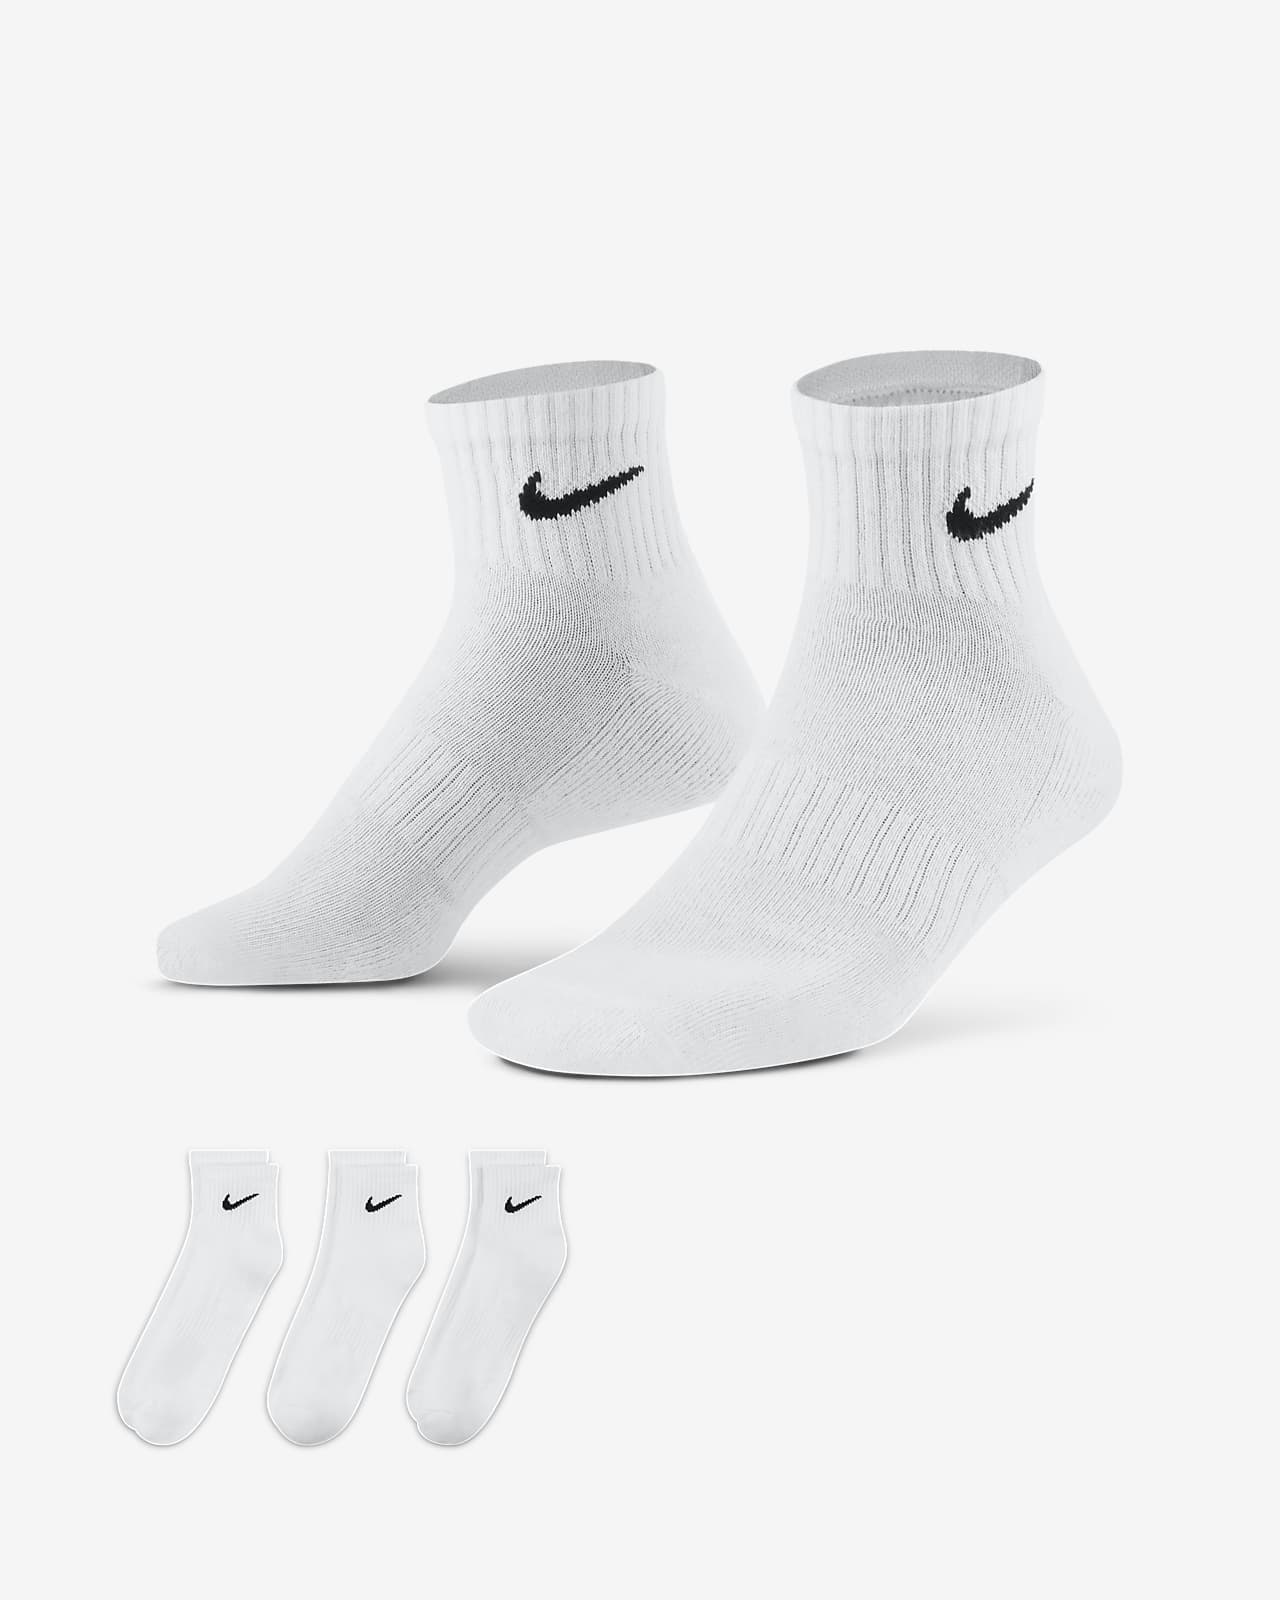 Cushioned Calcetines de hasta el tobillo (3 pares). Nike ES